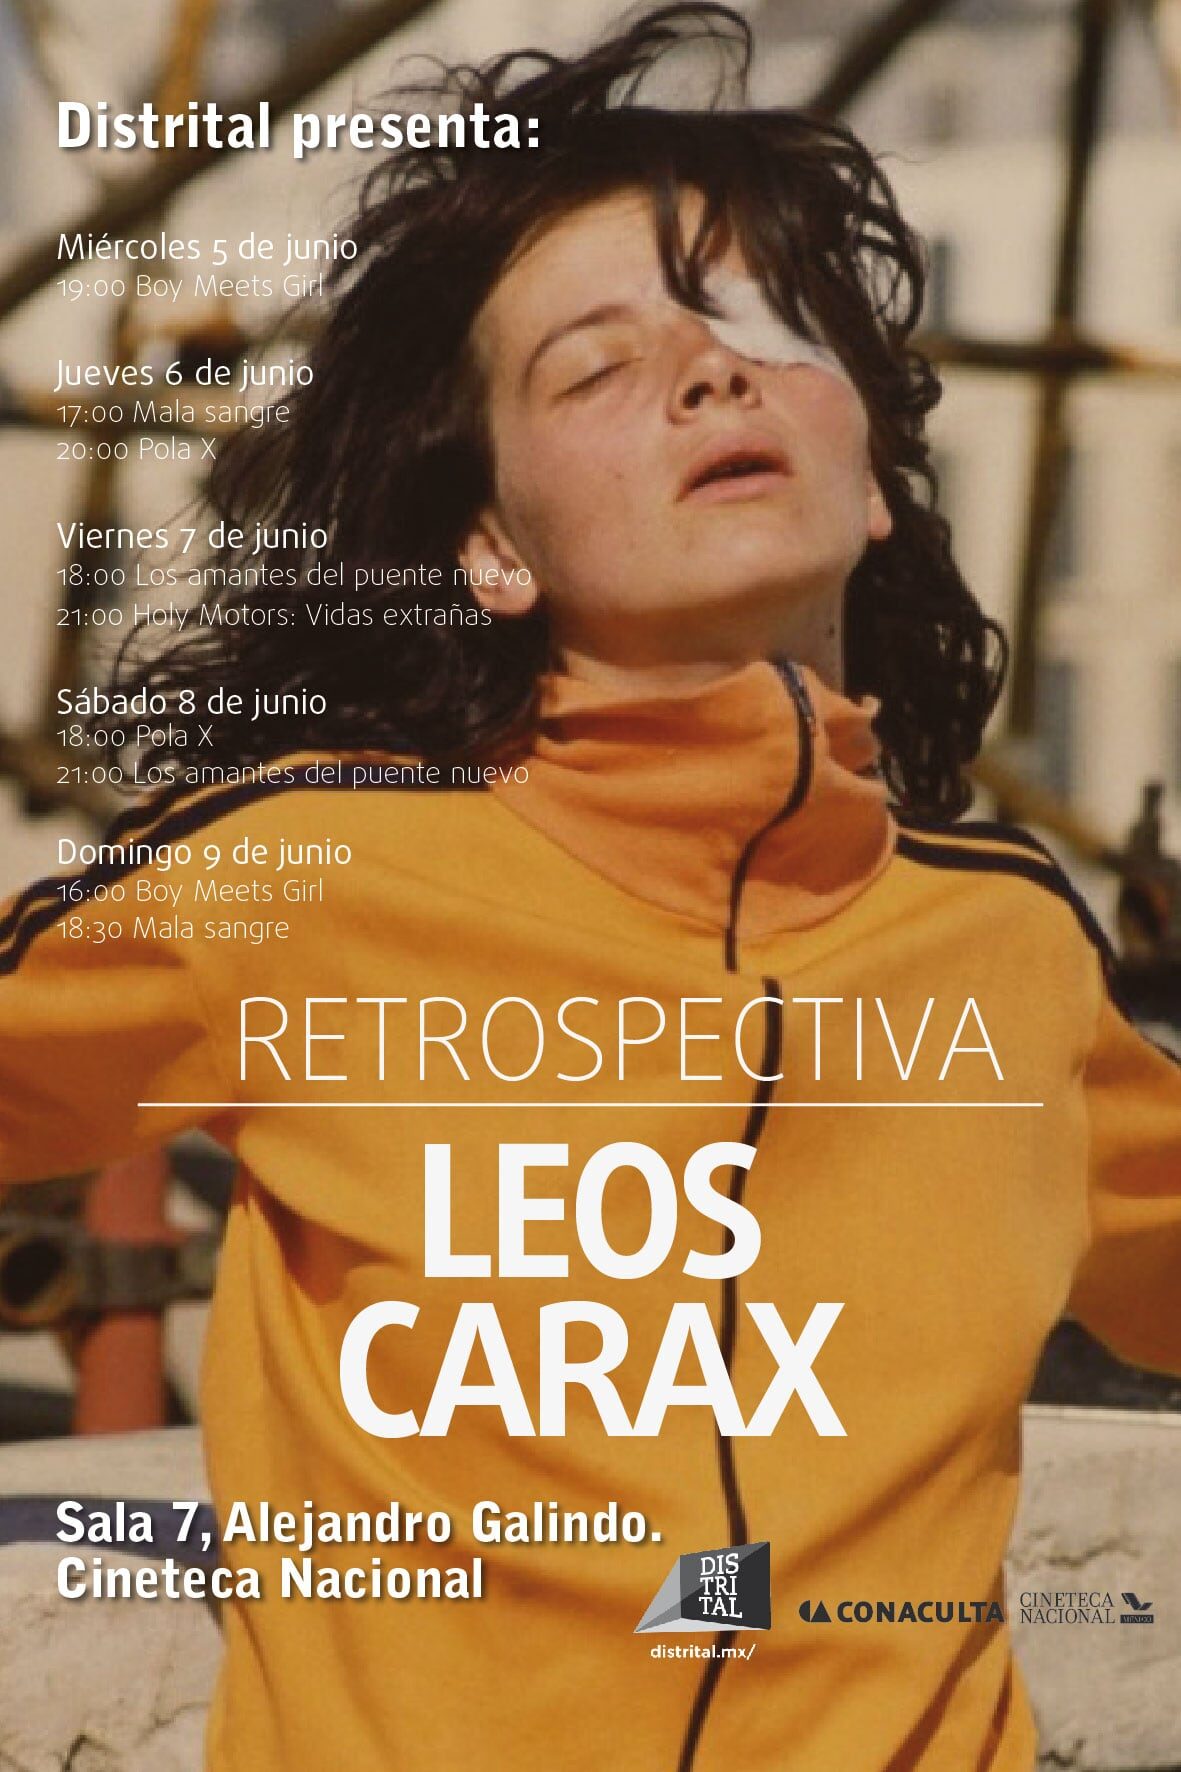 Retrospectiva de Leos Carax en la Cineteca